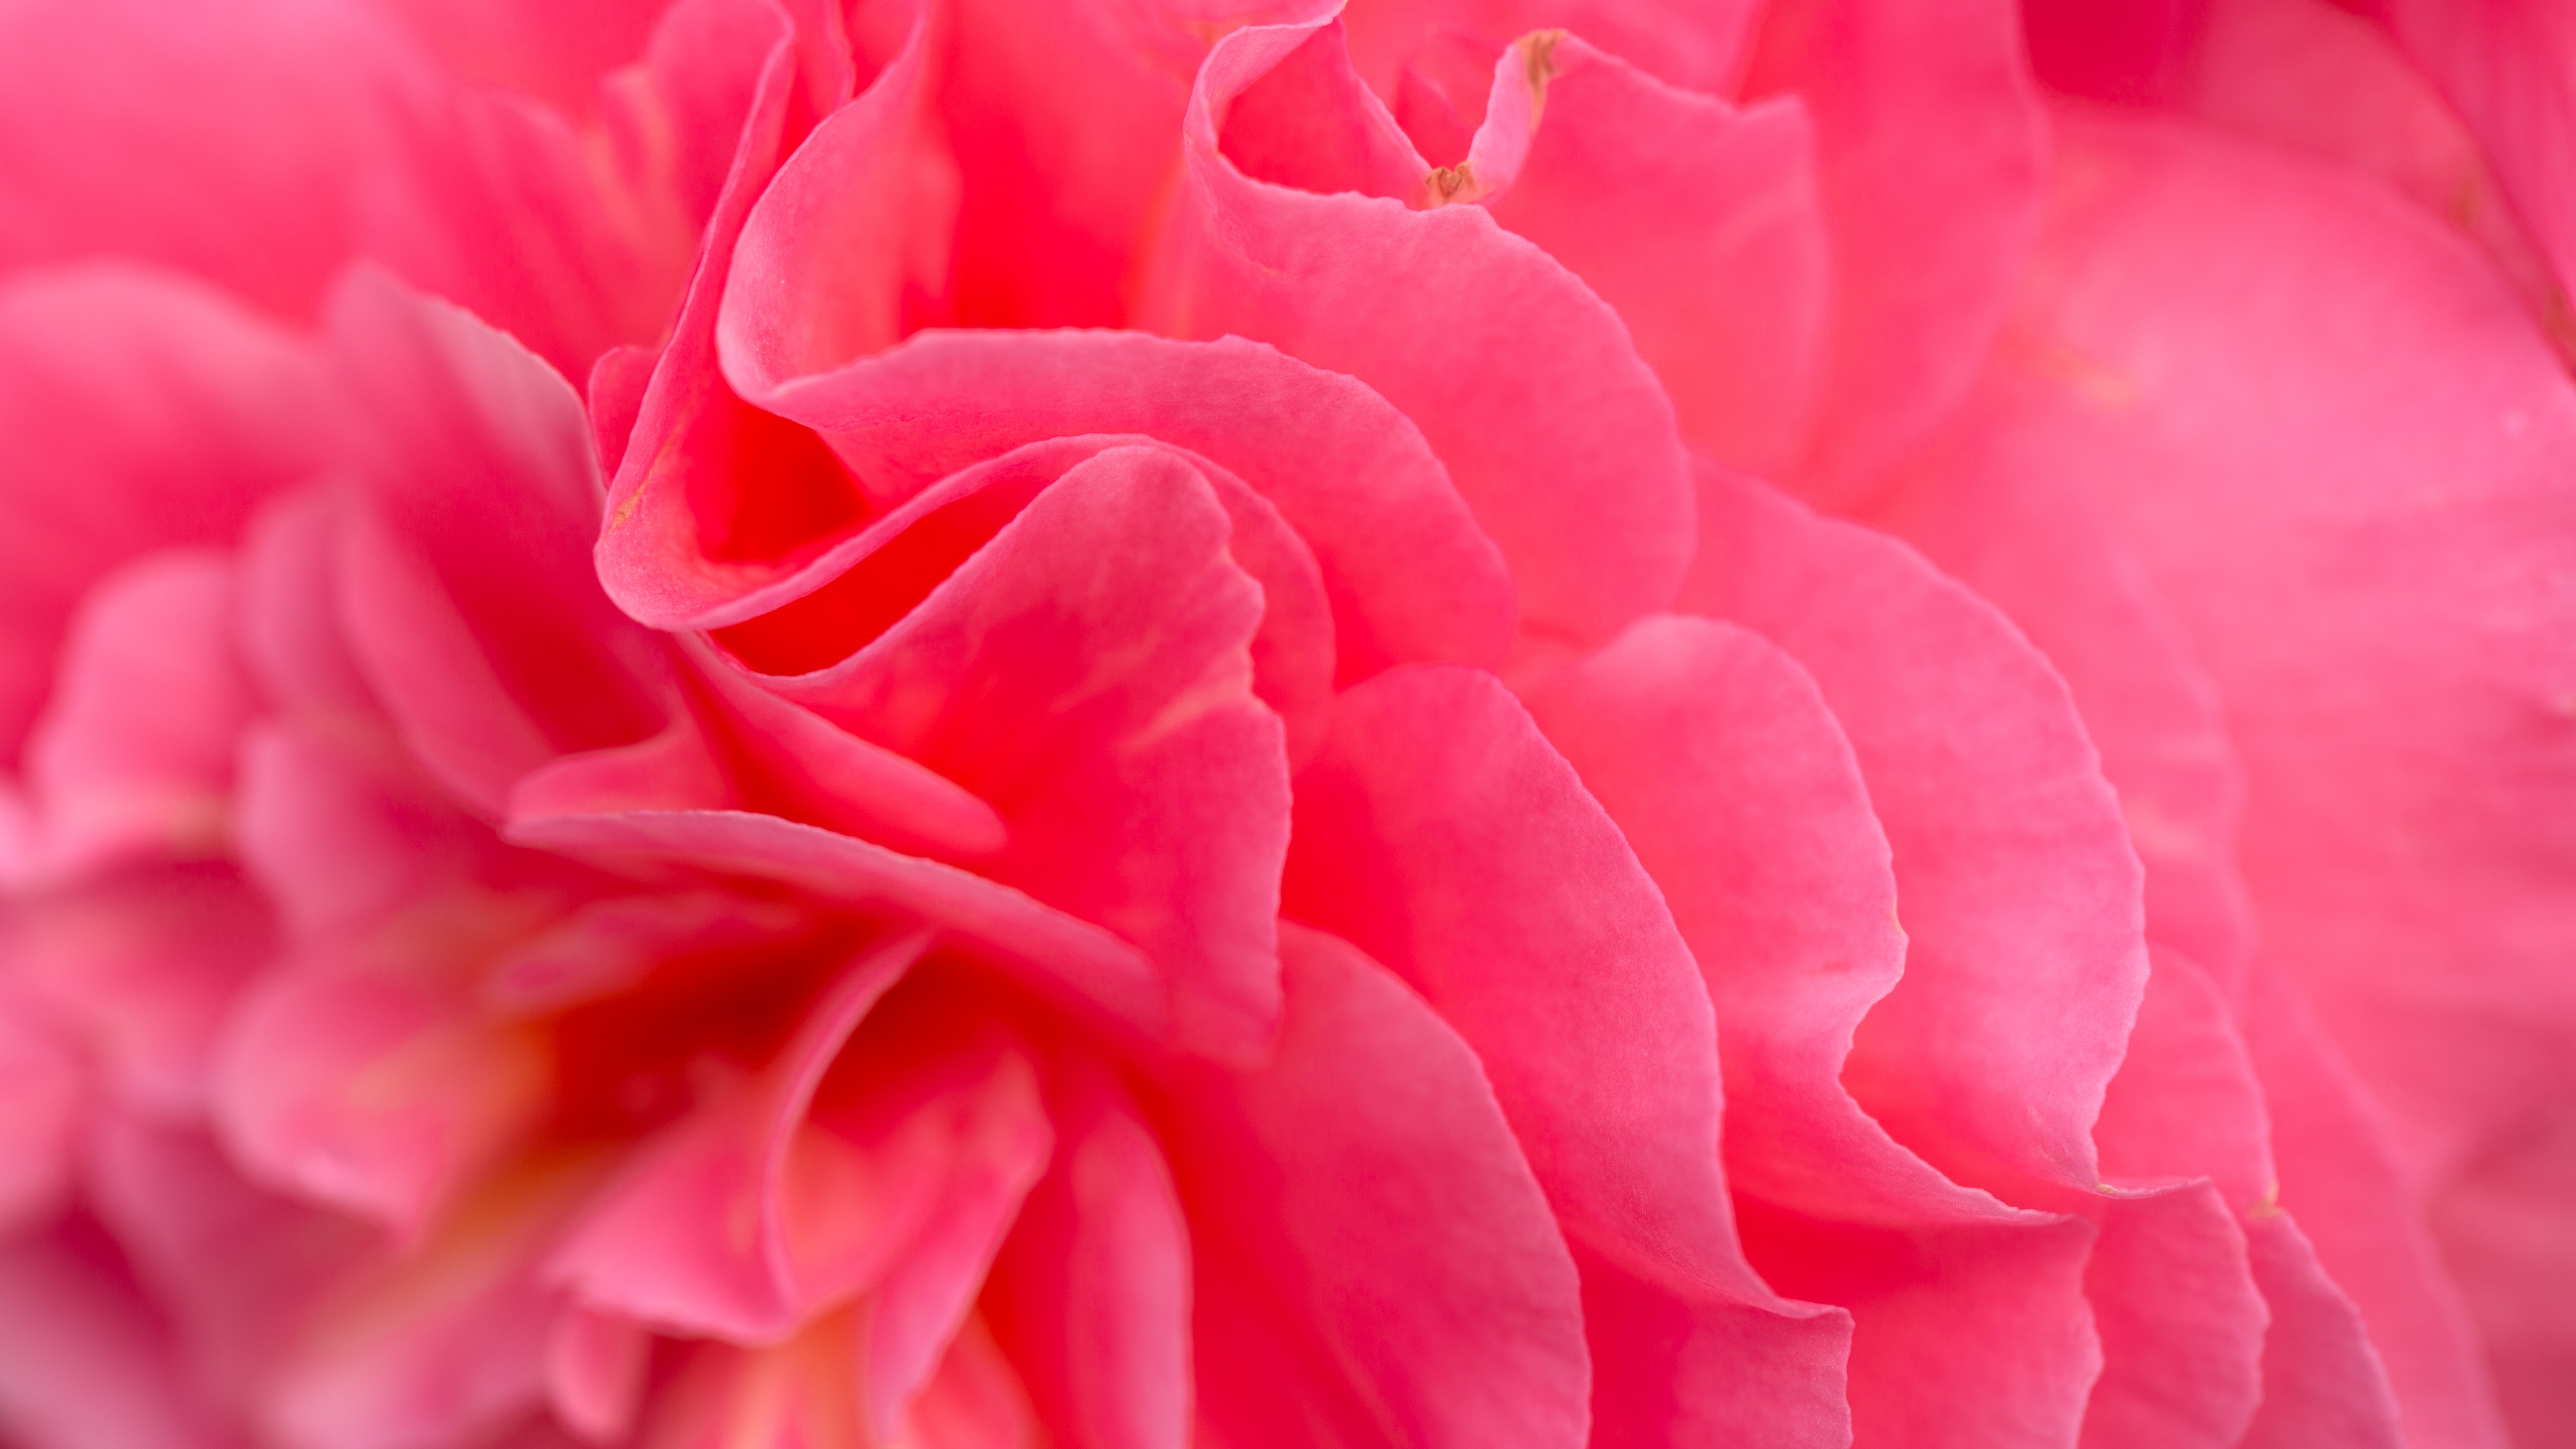 Hình nền hoa màu hồng sẽ làm cho màn hình của bạn trở nên tươi tắn và đẹp mắt hơn. Với những bông hoa nhỏ bé và tinh tế, bạn sẽ được tận hưởng vẻ đẹp thiên nhiên thật tuyệt vời. Hãy nhấp chuột để xem hình nền hoa màu hồng đầy sắc màu và tối ưu hóa trải nghiệm của bạn!